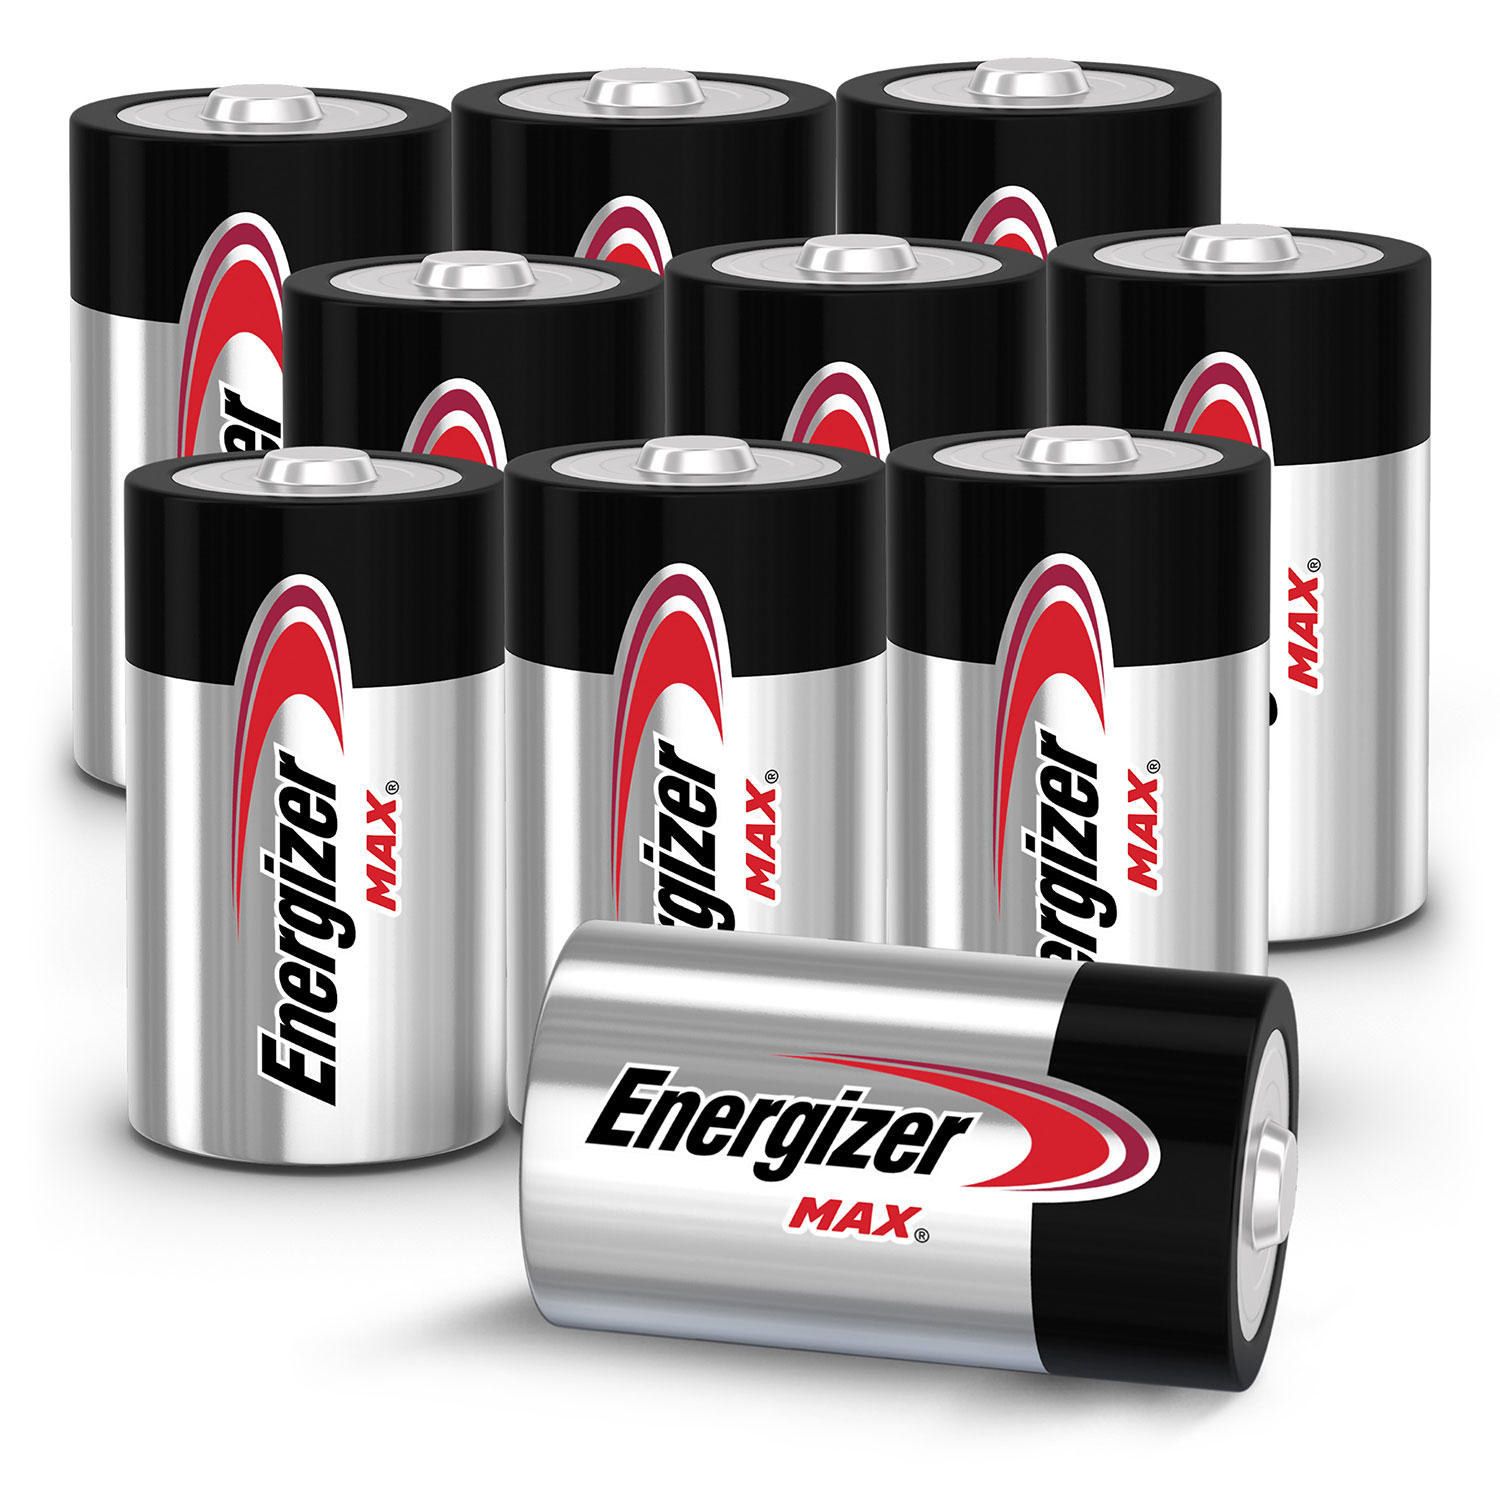 Ten batteries